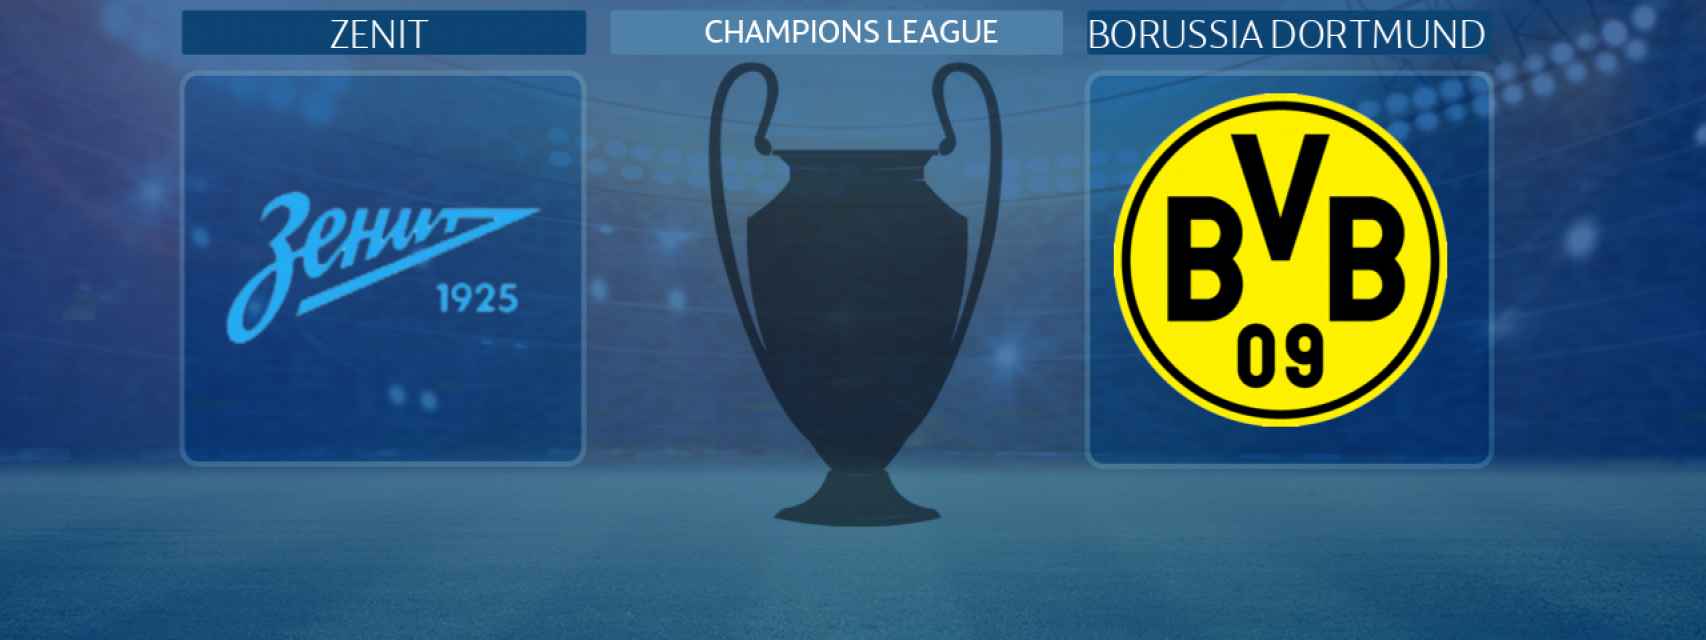 Zenit - Borussia Dortmund, partido de la Champions League